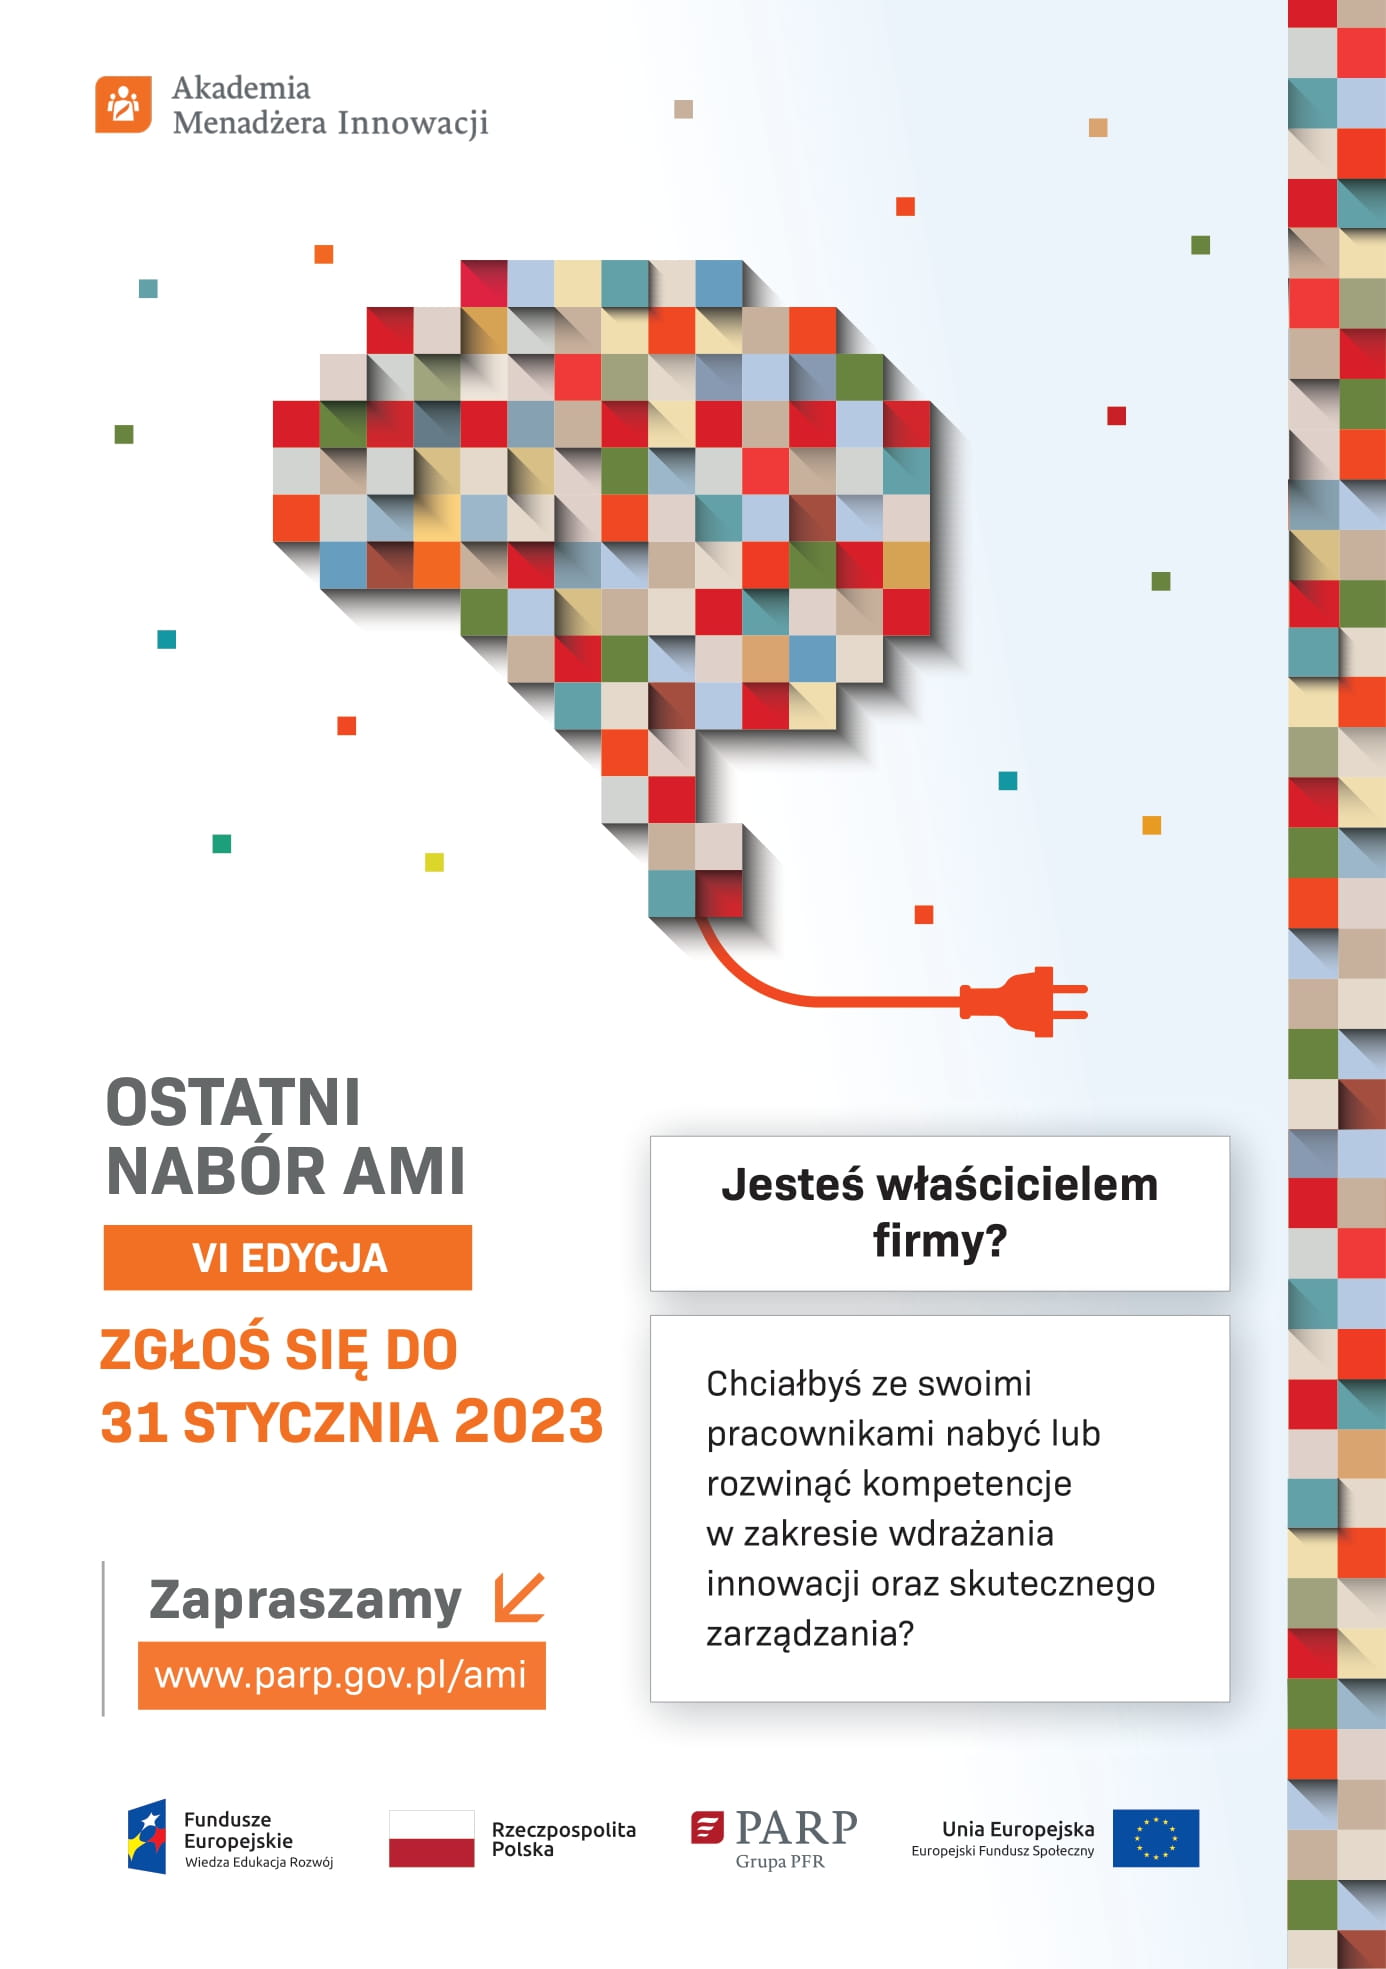 AMI to kompleksowy, autorski program Polskiej Agencji Rozwoju Przedsiębiorczości